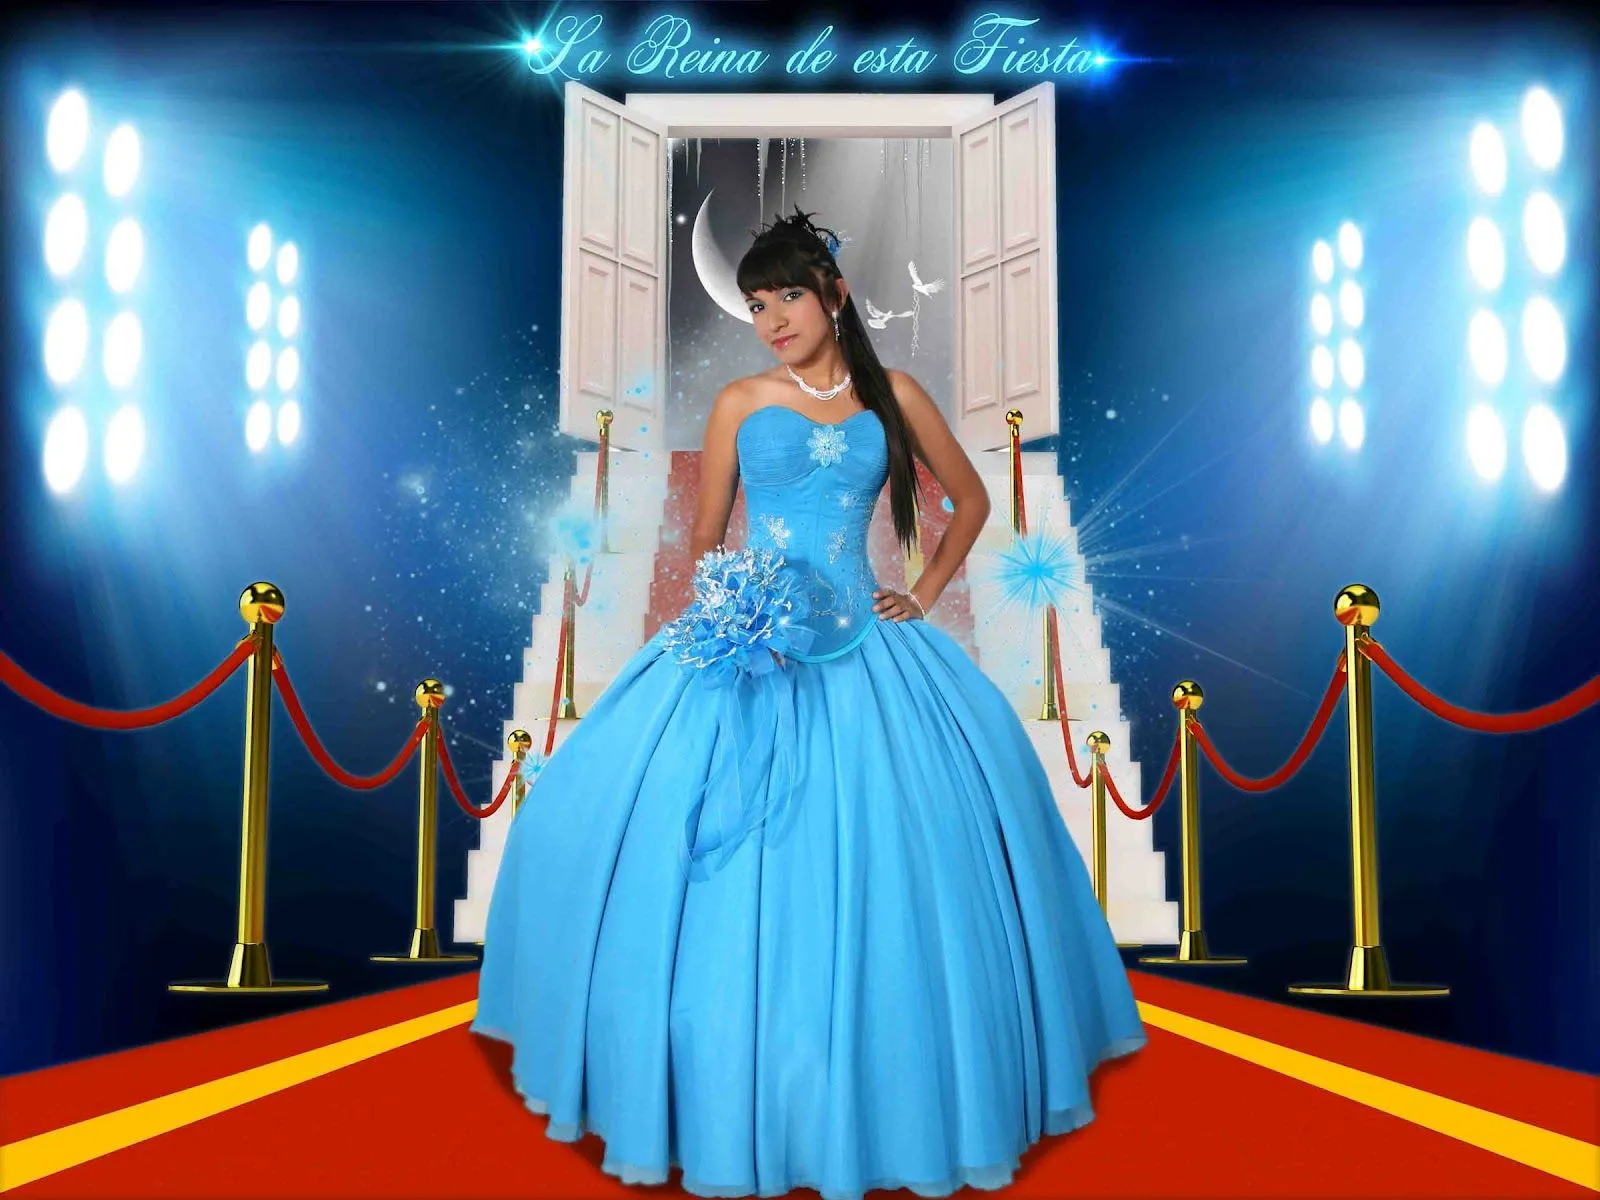 Plantillas para Photoshop 2014: La reina de esta noche